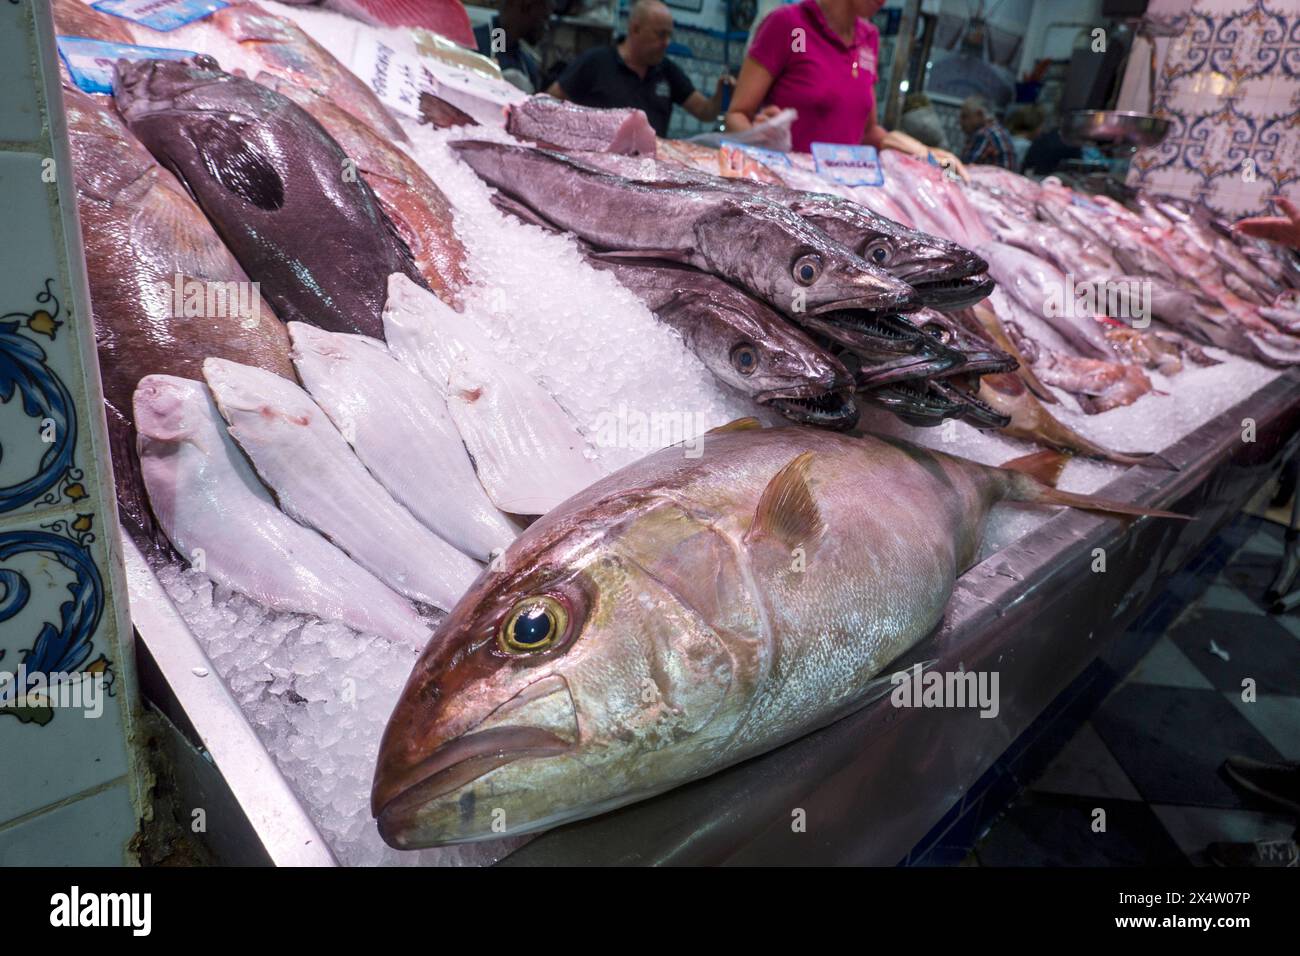 diverse Fische in der Kühltheke auf dem Fischmarkt des Mercado Nuestra Senora de Africa, Teneriffa, Kanarische Inseln, Spanien,Santa Cruz de Tenerife Stock Photo